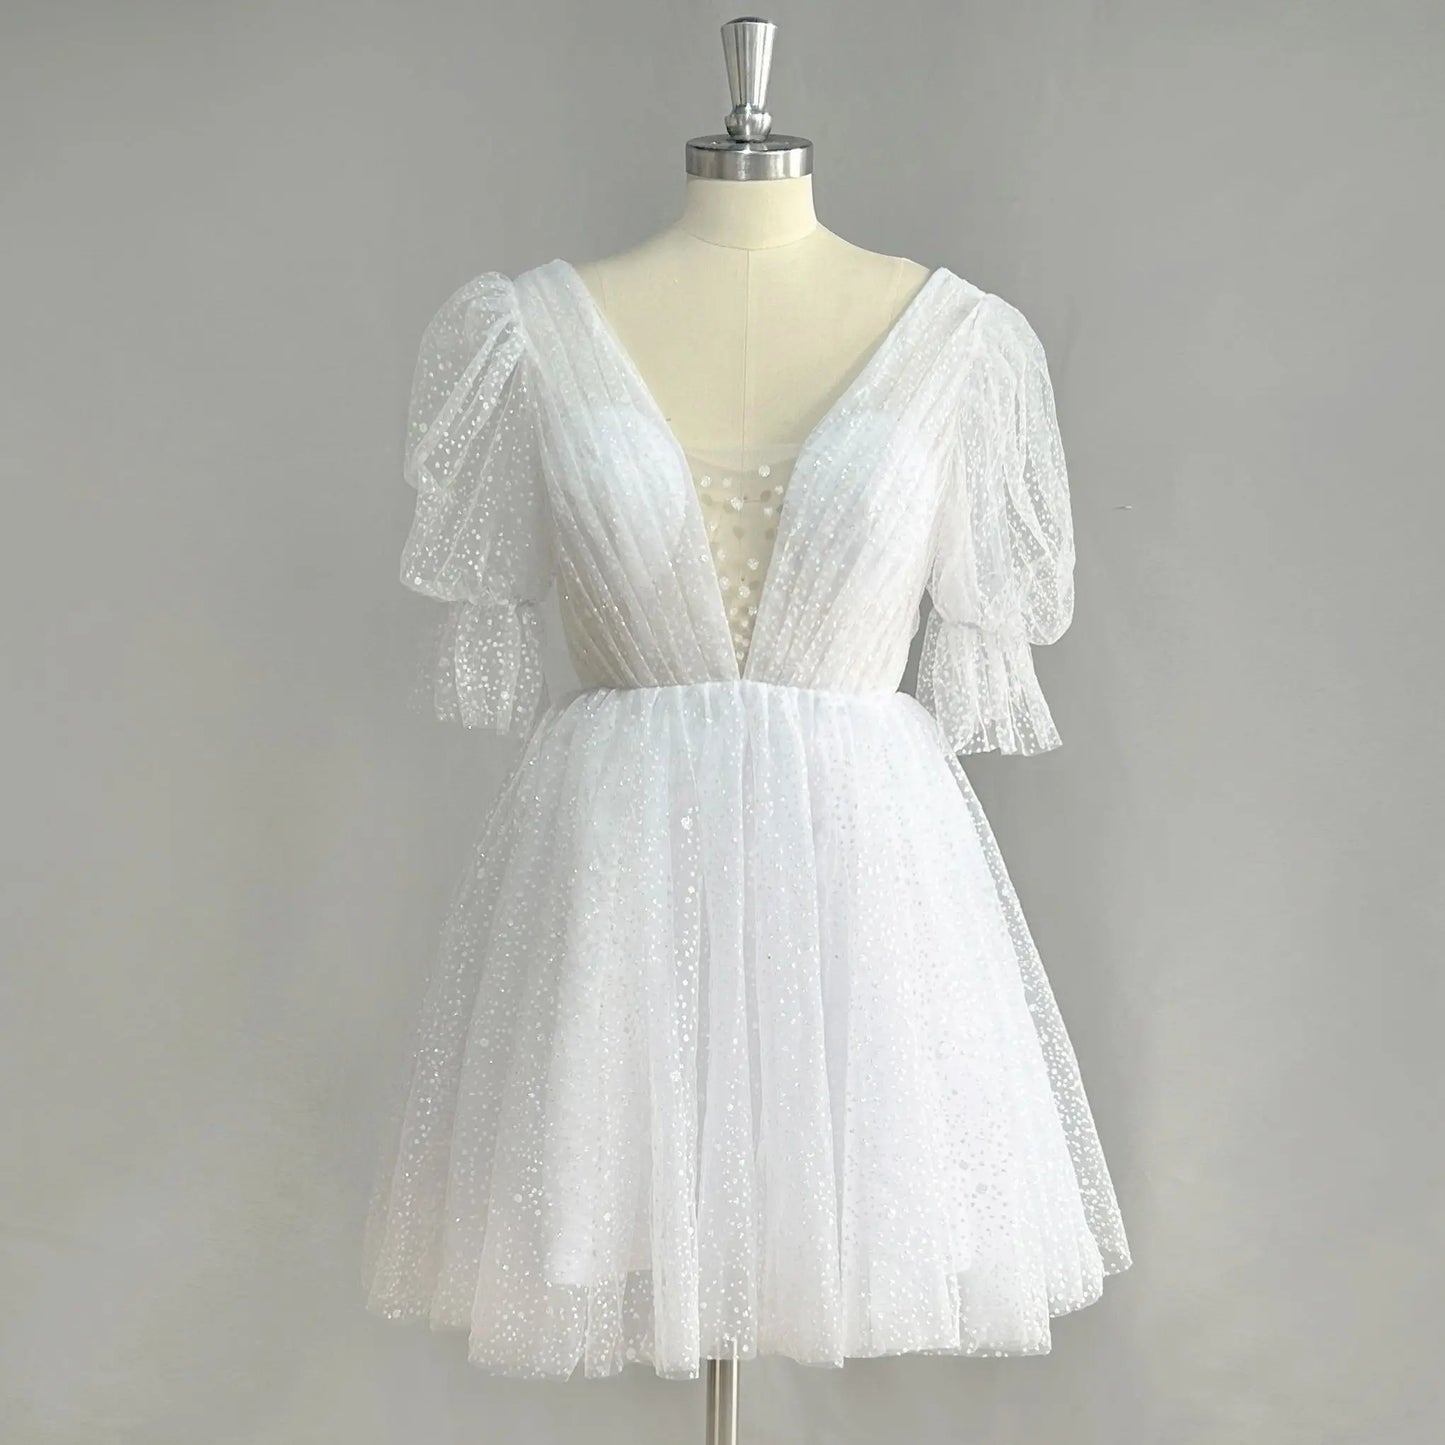 Puff rękawy błyszcząca mini krótka suknia ślubna v szyja bez kolan błyszcząca suknia ślubna